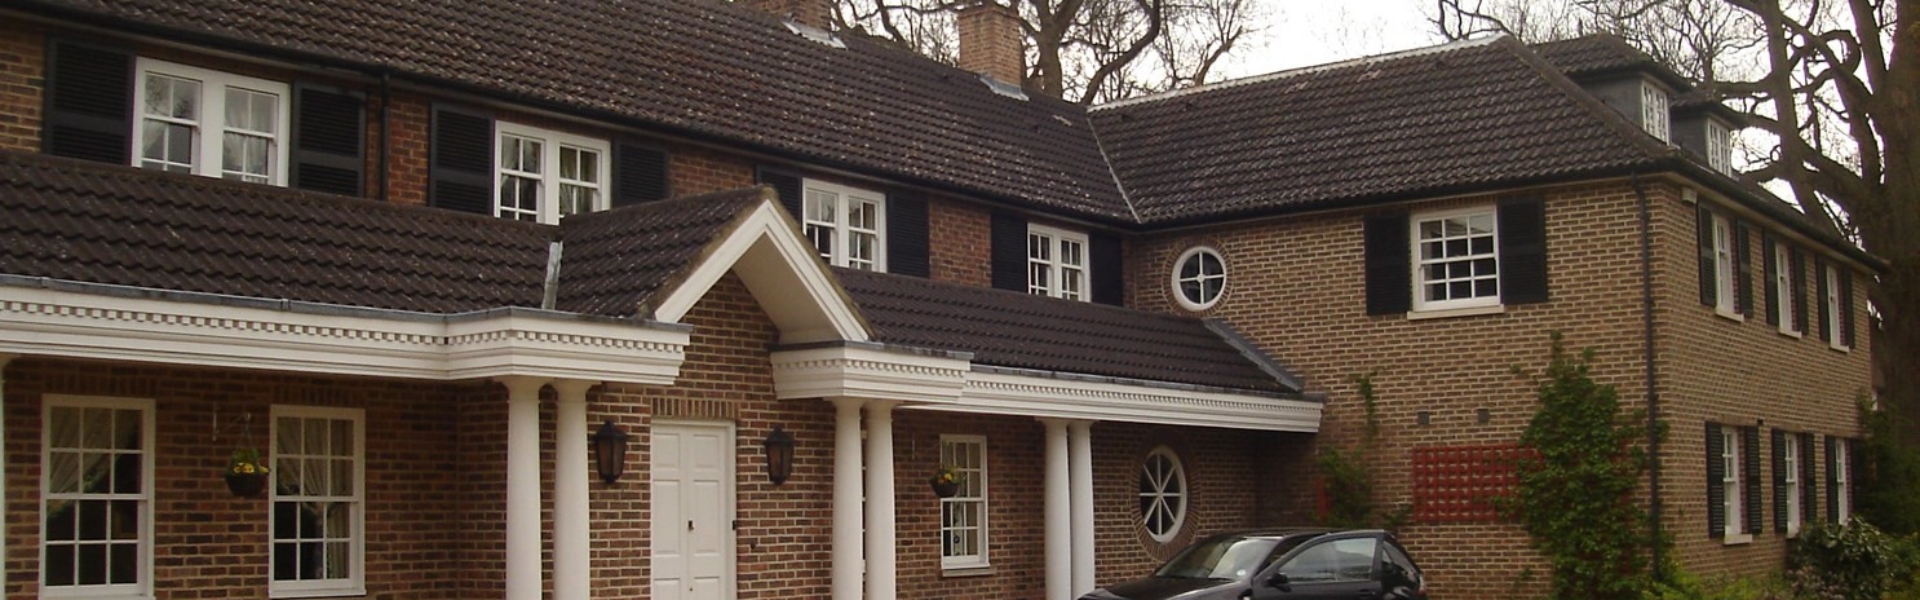 house in Sevenoaks Kent